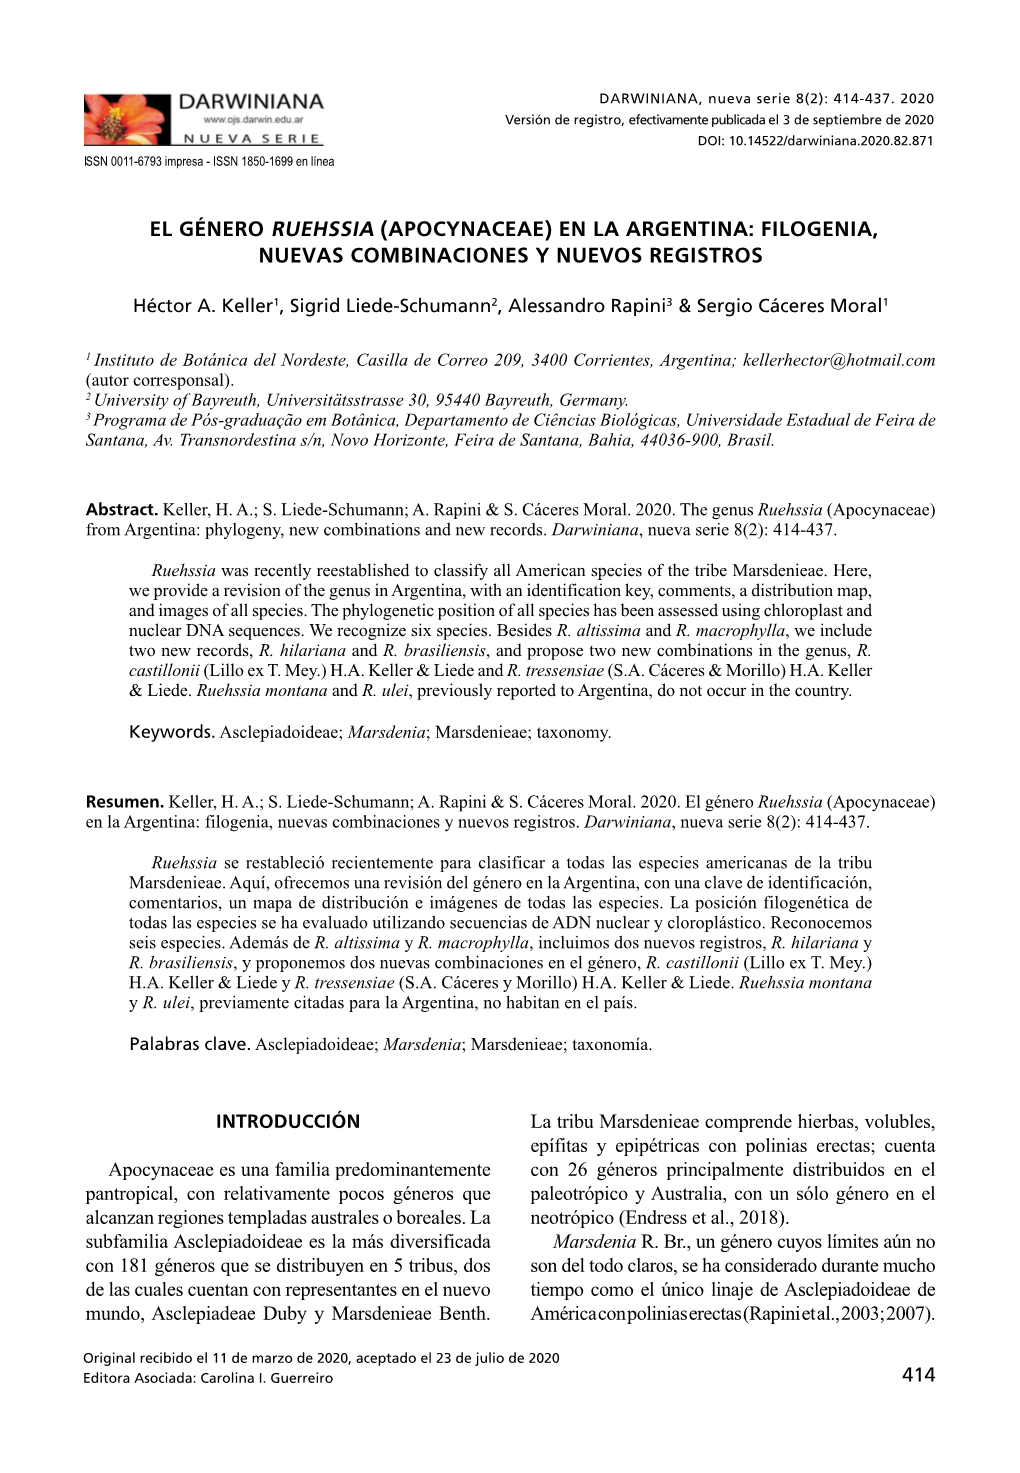 El Género Ruehssia (Apocynaceae) En La Argentina: Filogenia, Nuevas Combinaciones Y Nuevos Registros